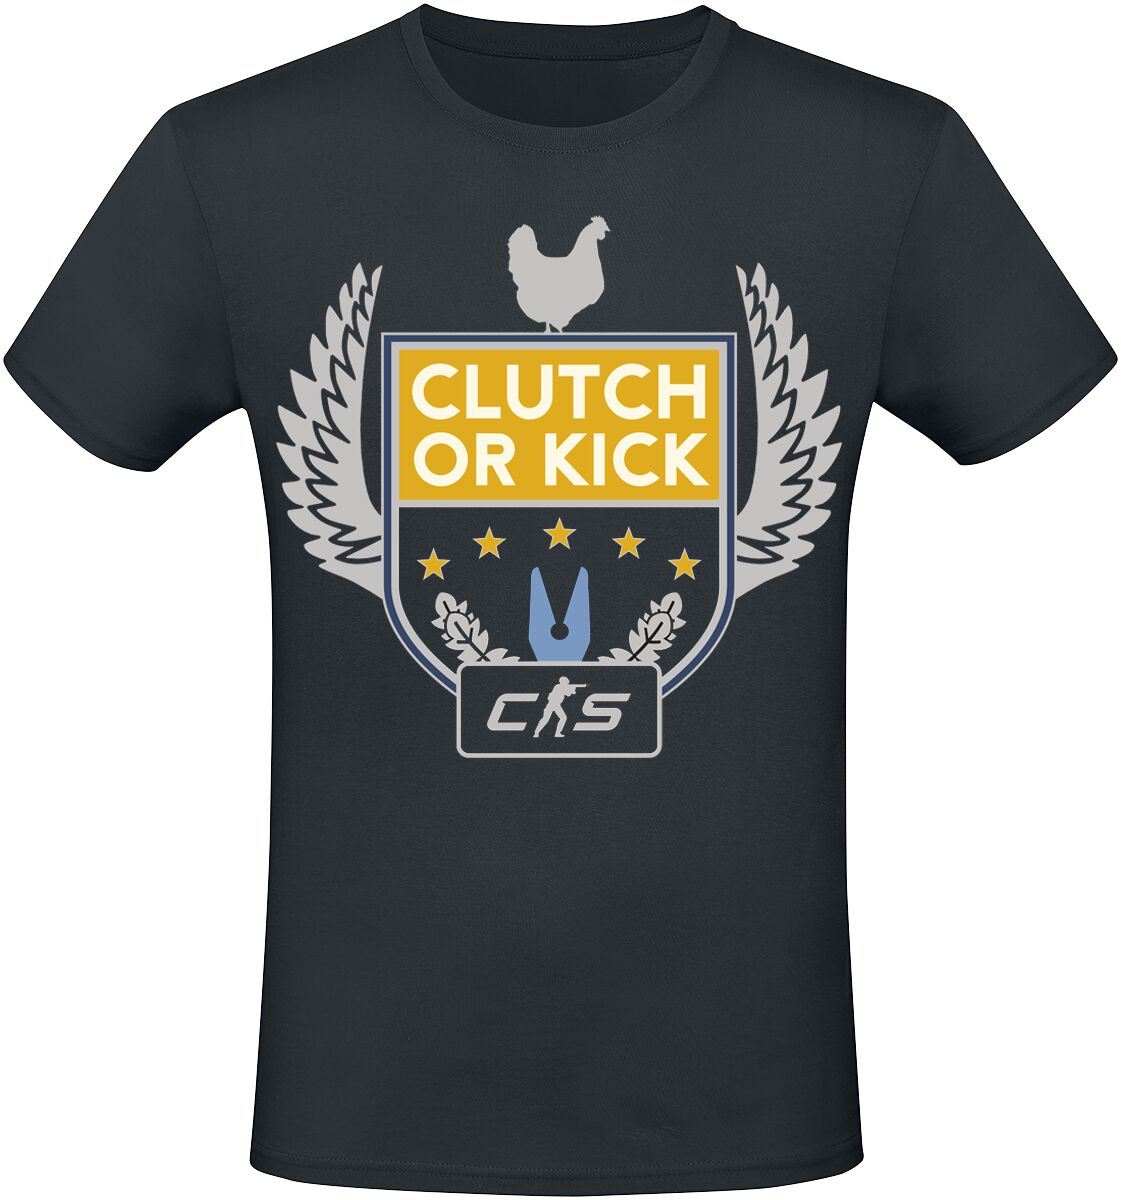 Counter-Strike - Gaming T-Shirt - 2 - Clutch Or Kick - S bis XXL - für Männer - Größe L - schwarz  - EMP exklusives Merchandise!